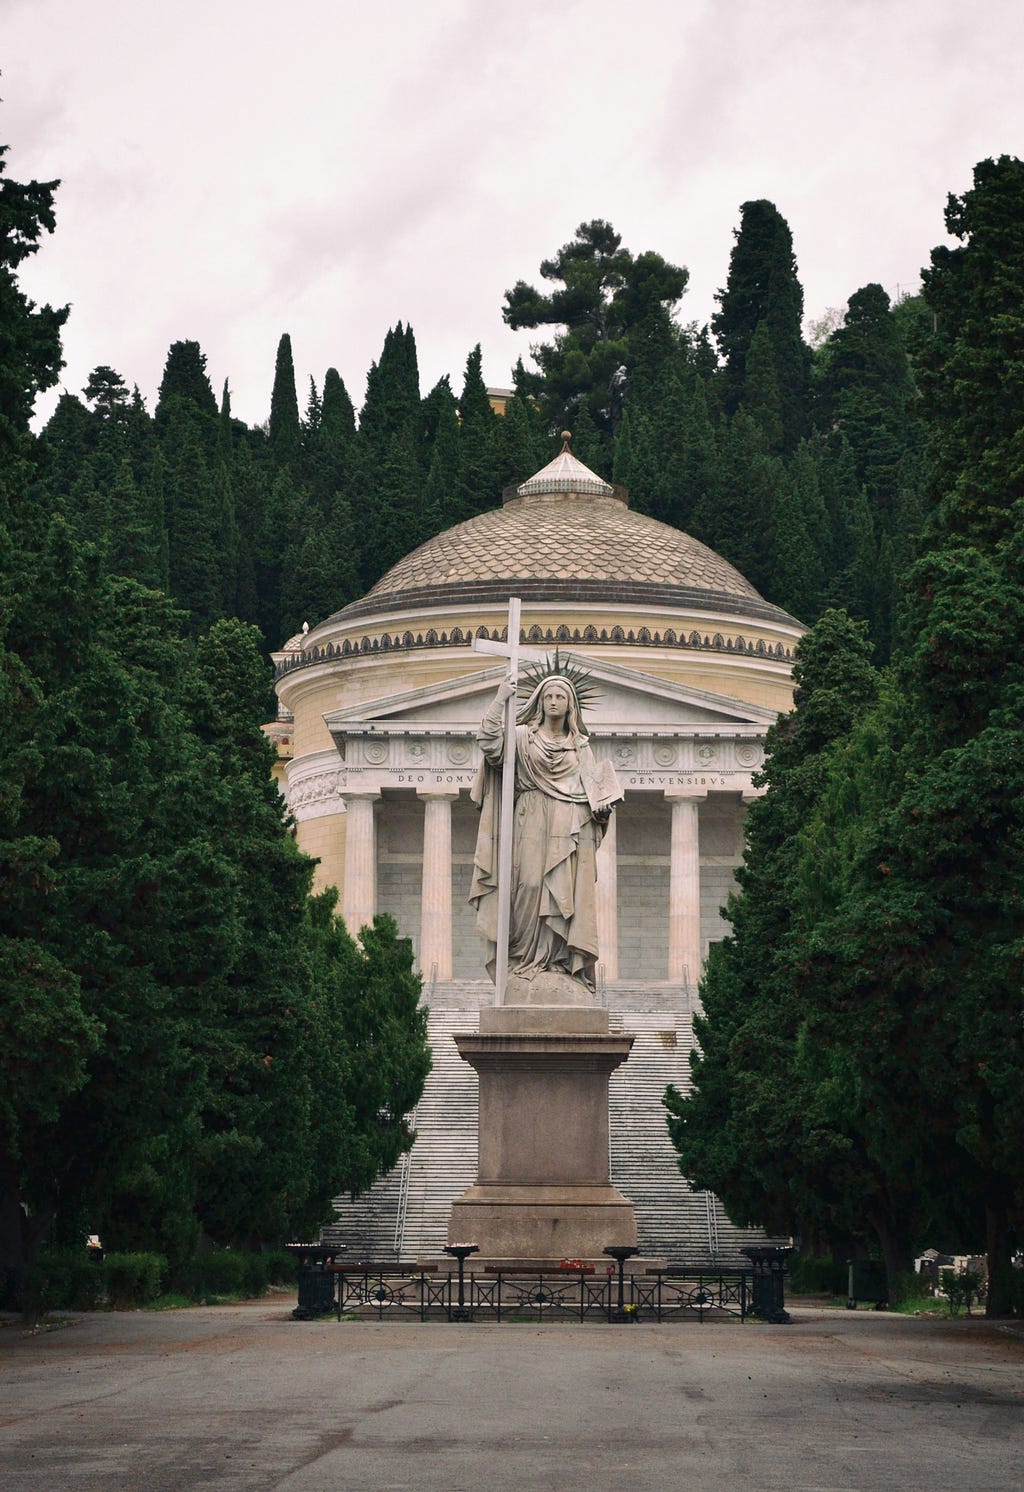 The entrance of Staglieno Cemetery in Genoa, Italy.